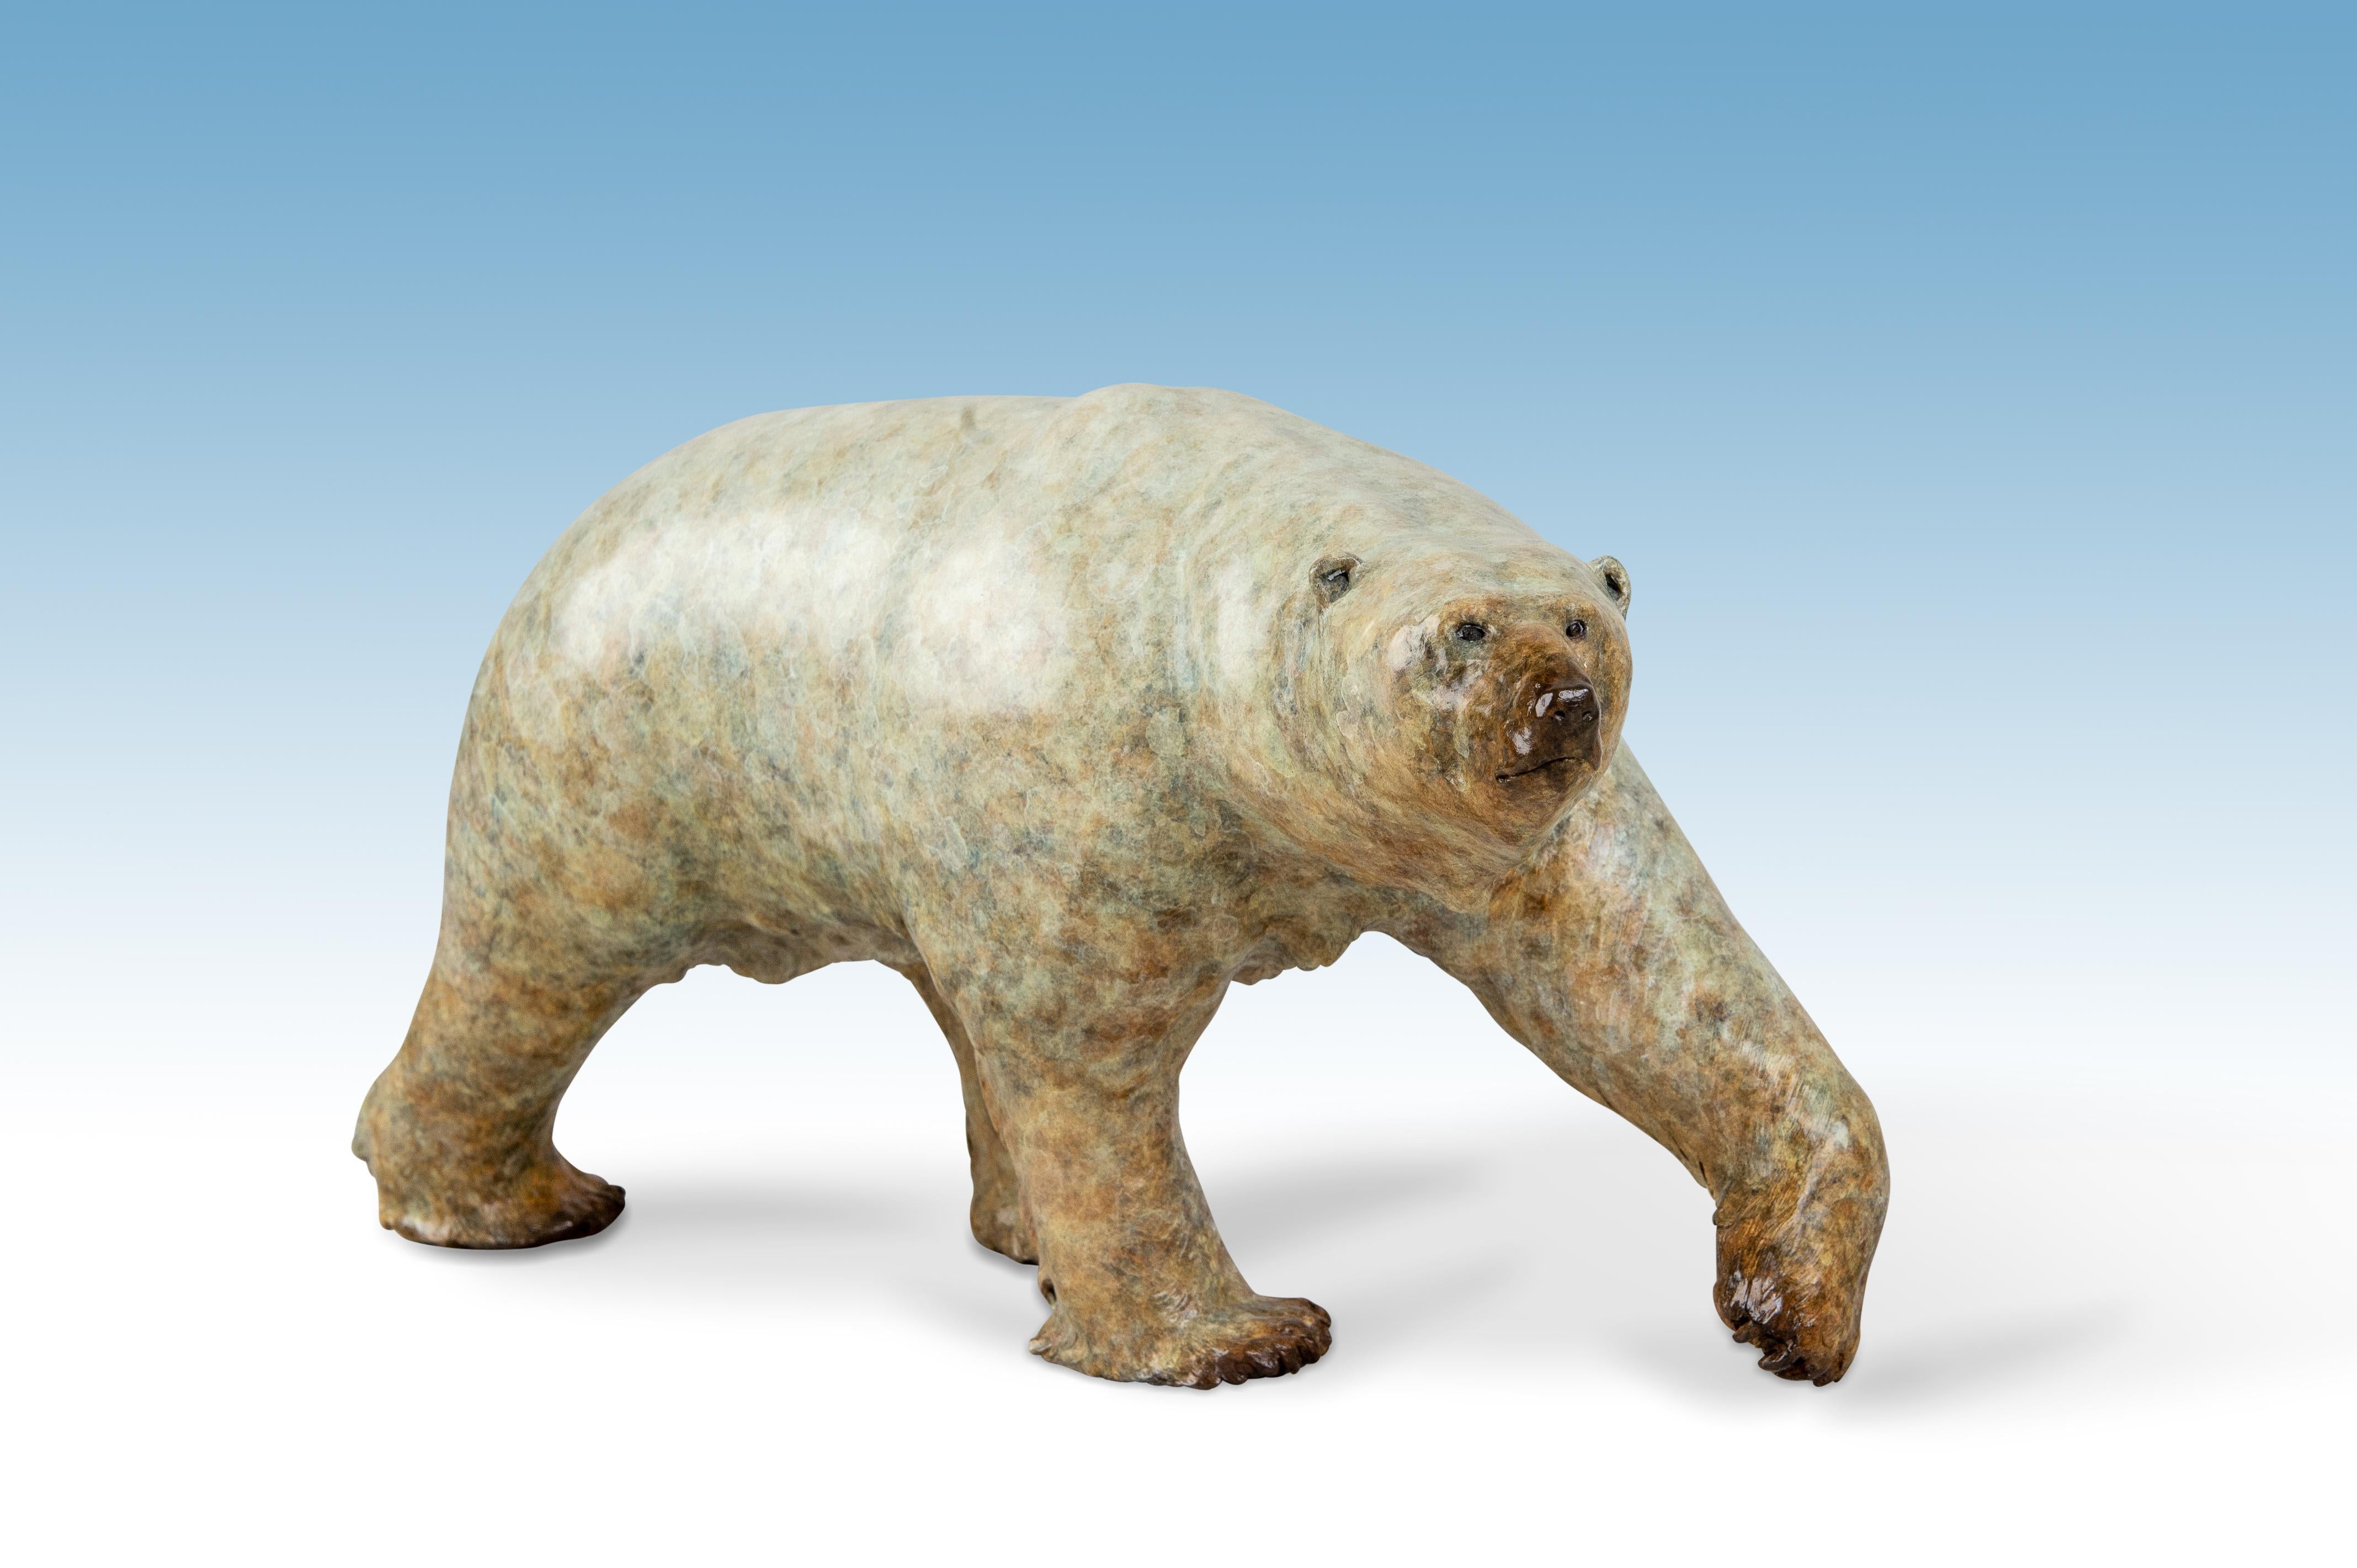 Nanook l'ours polaire est une remarquable sculpture en bronze de Tobias Martin.

Tobias Martin est né en 1972 dans le Wiltshire, à 12 miles de Stonehenge. Influencées par son éducation rurale idyllique et par les forces de la nature et de la magie